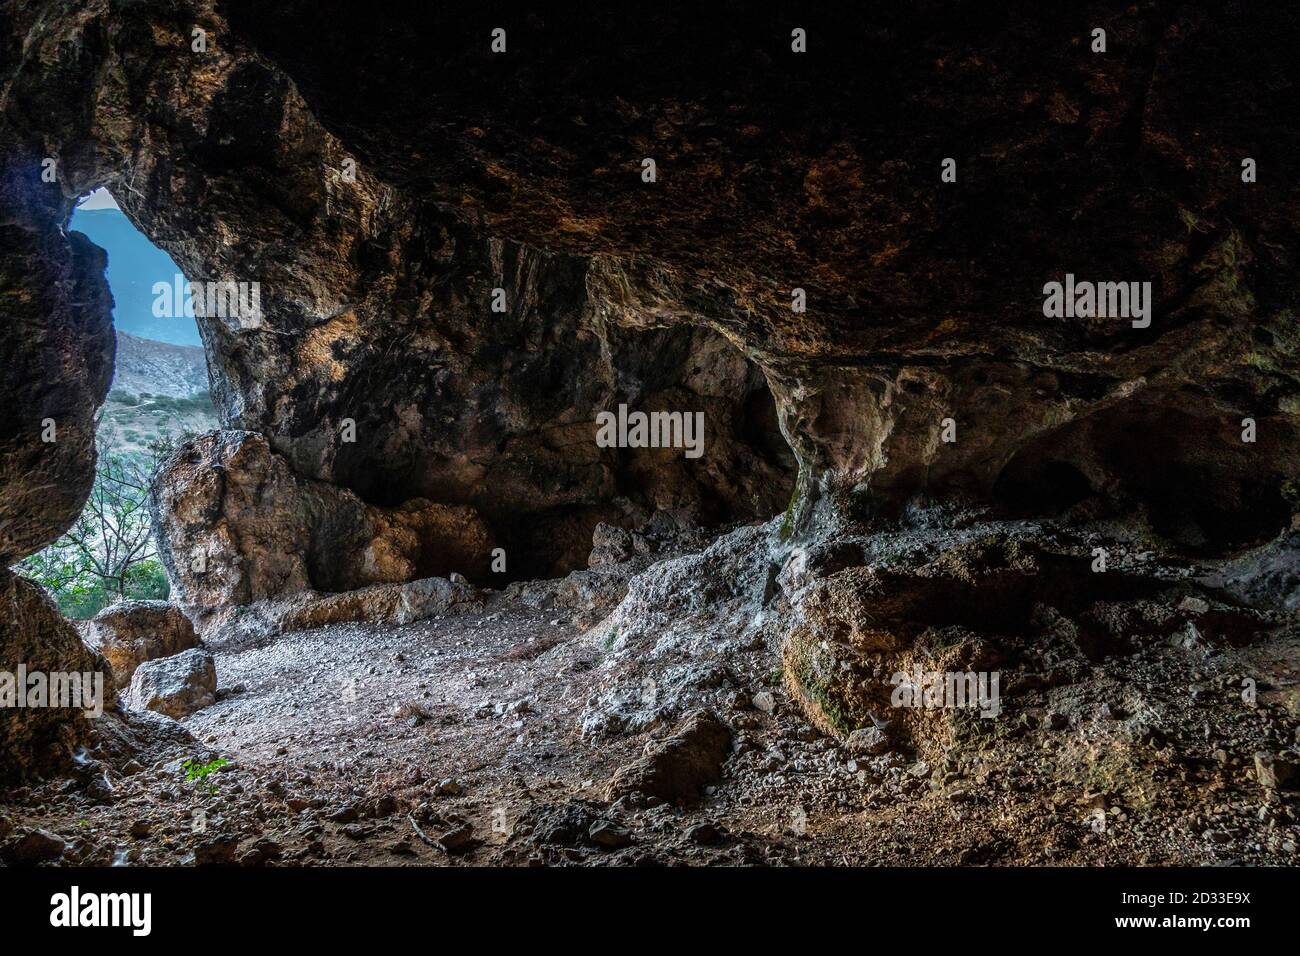 grotta della scoperta della testa di un femore di un giovane Neanderthal. Abruzzo, Italia, Europa Foto Stock